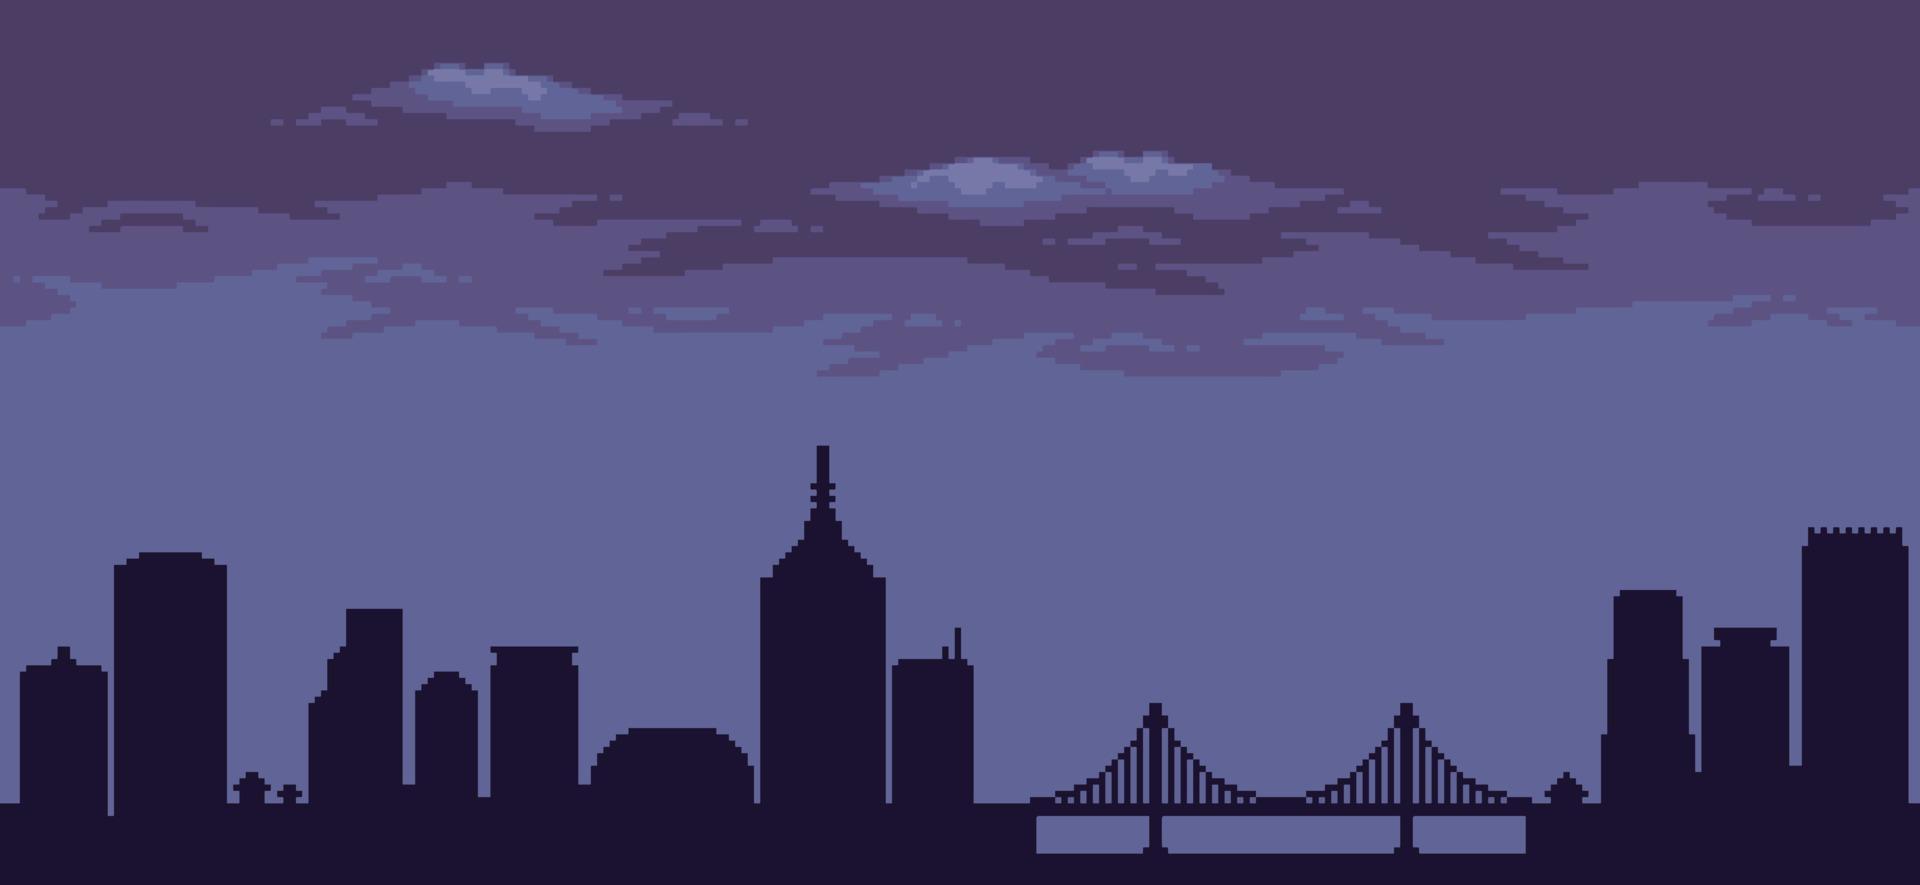 pixelkunststadsachtergrond met gebouwen, constructies, brug en bewolkte hemel voor 8bit-game vector